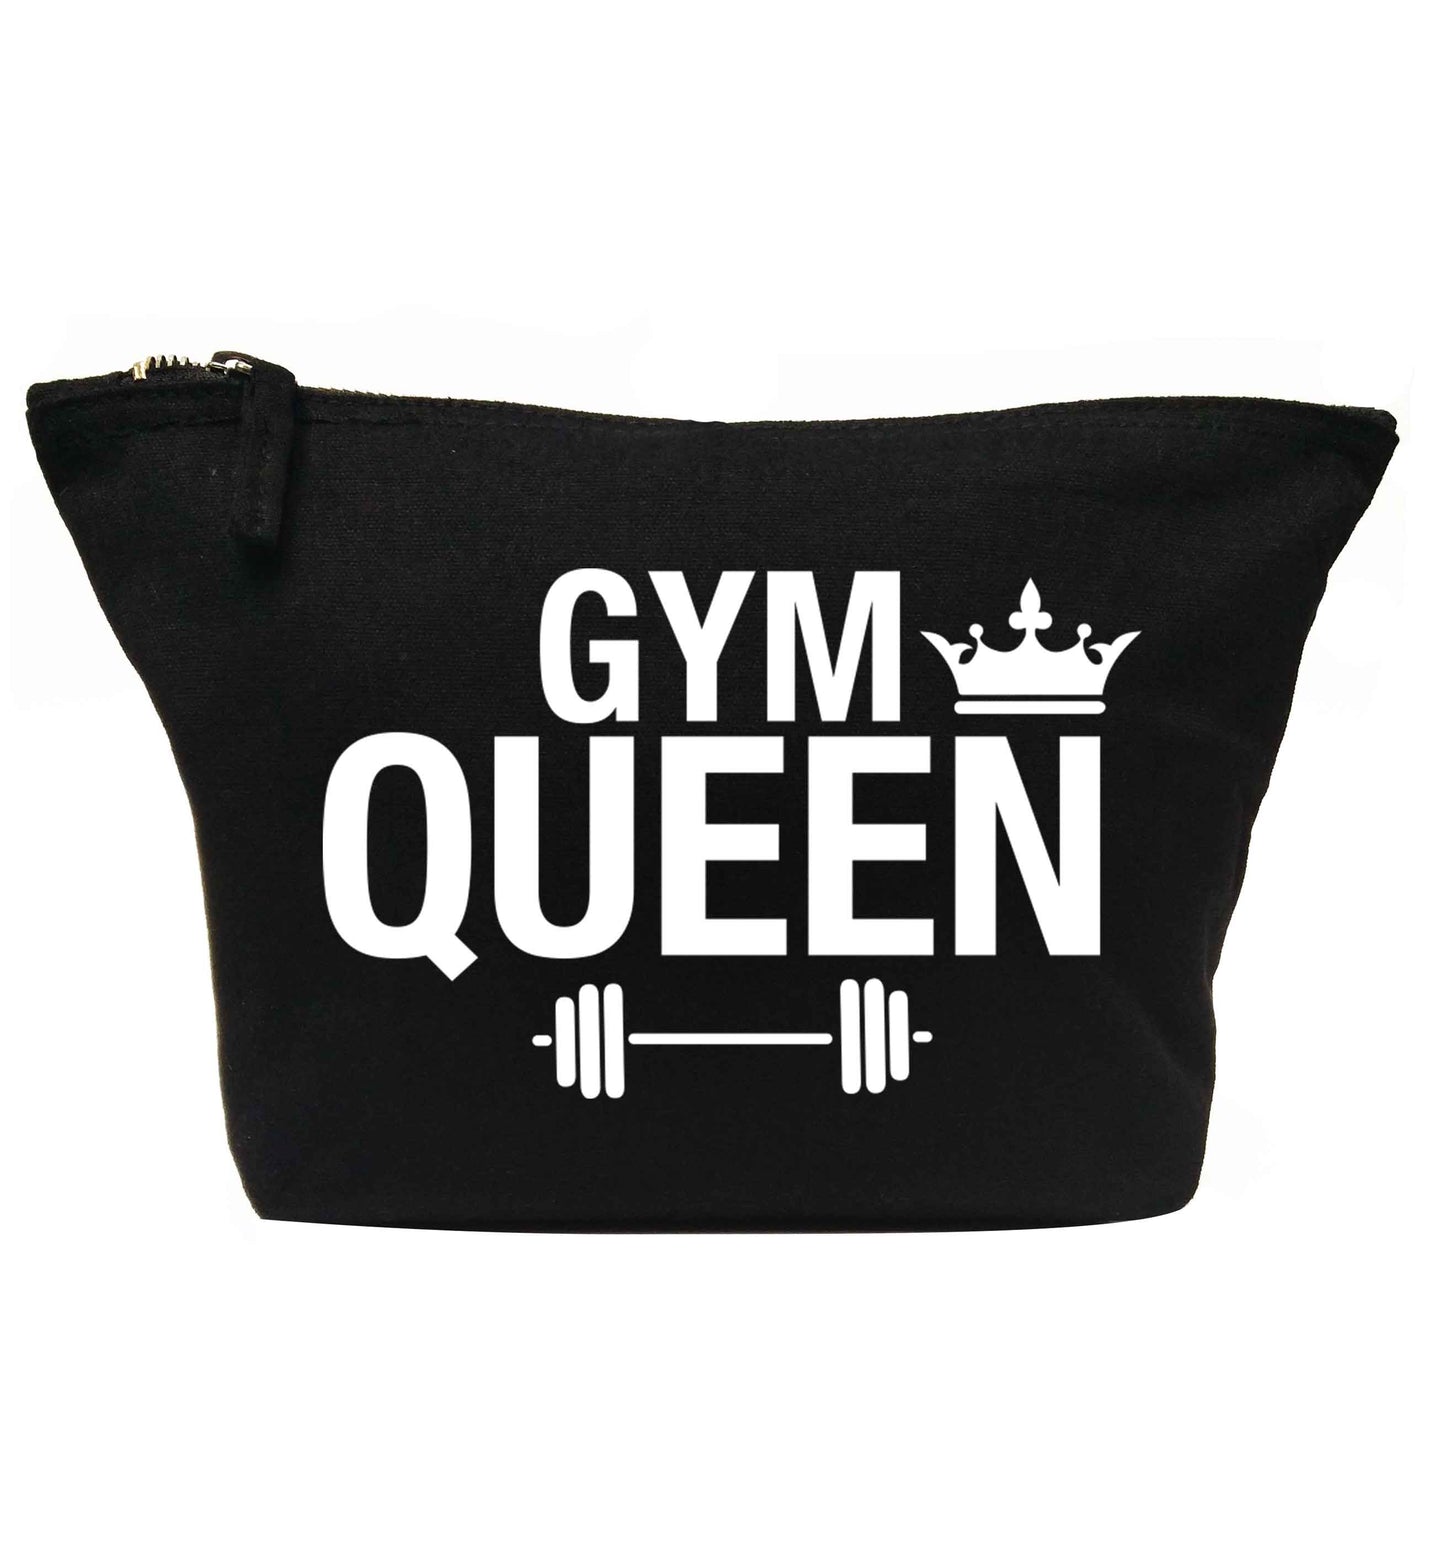 Gym queen | makeup / wash bag